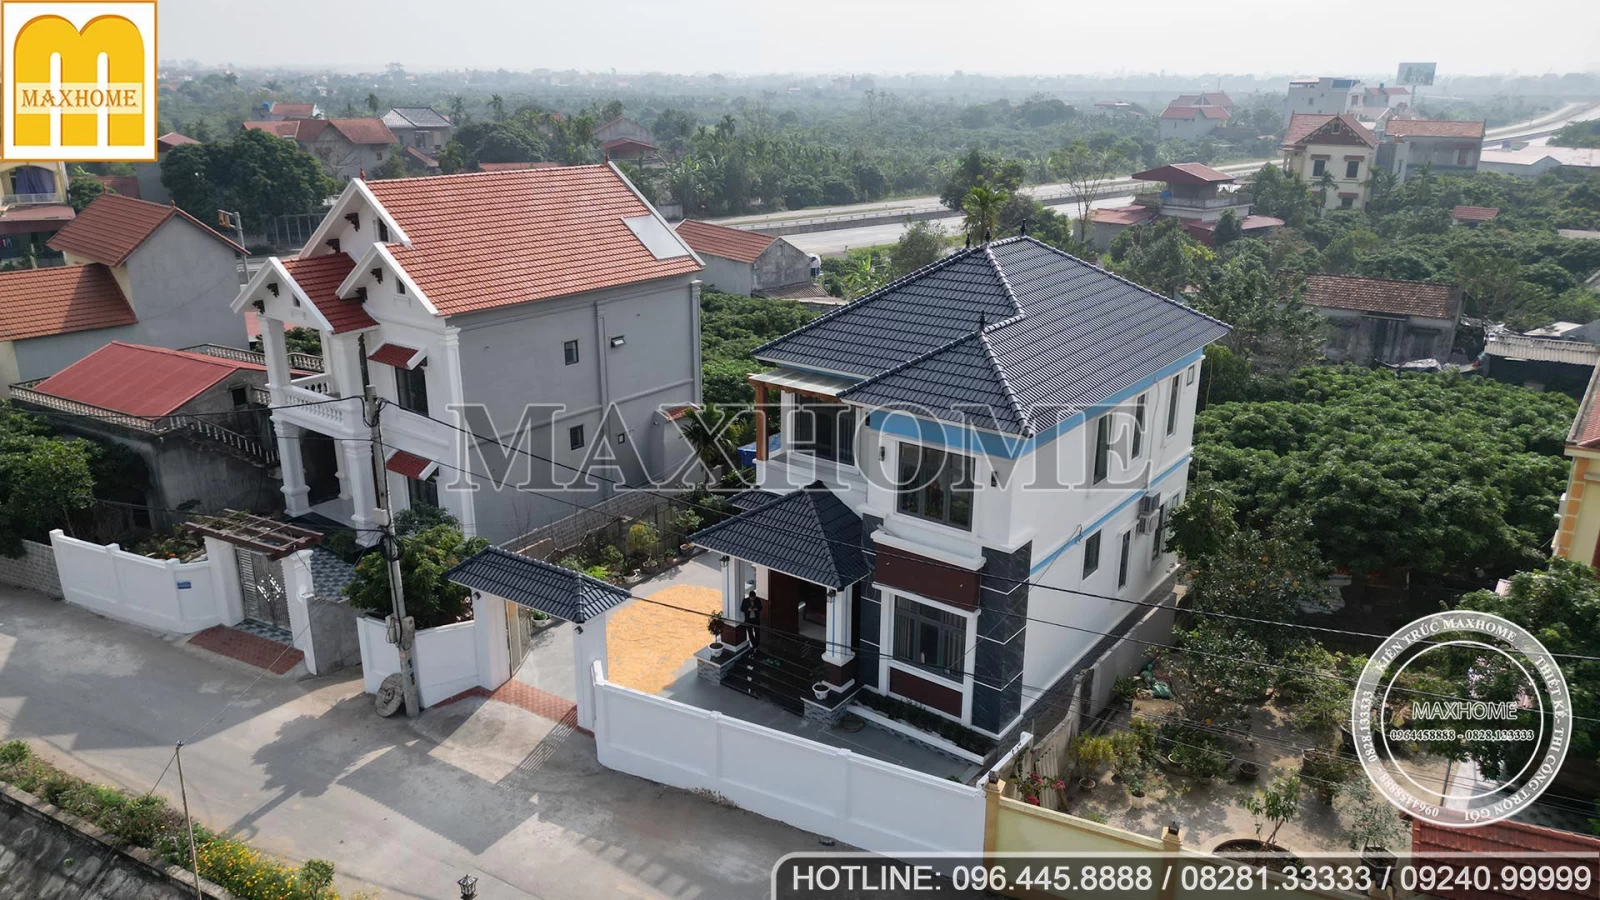 Maxhome thi công hoàn thiện nhà 2 tầng SIÊU ĐẸP tại Hưng Yên | MH02899